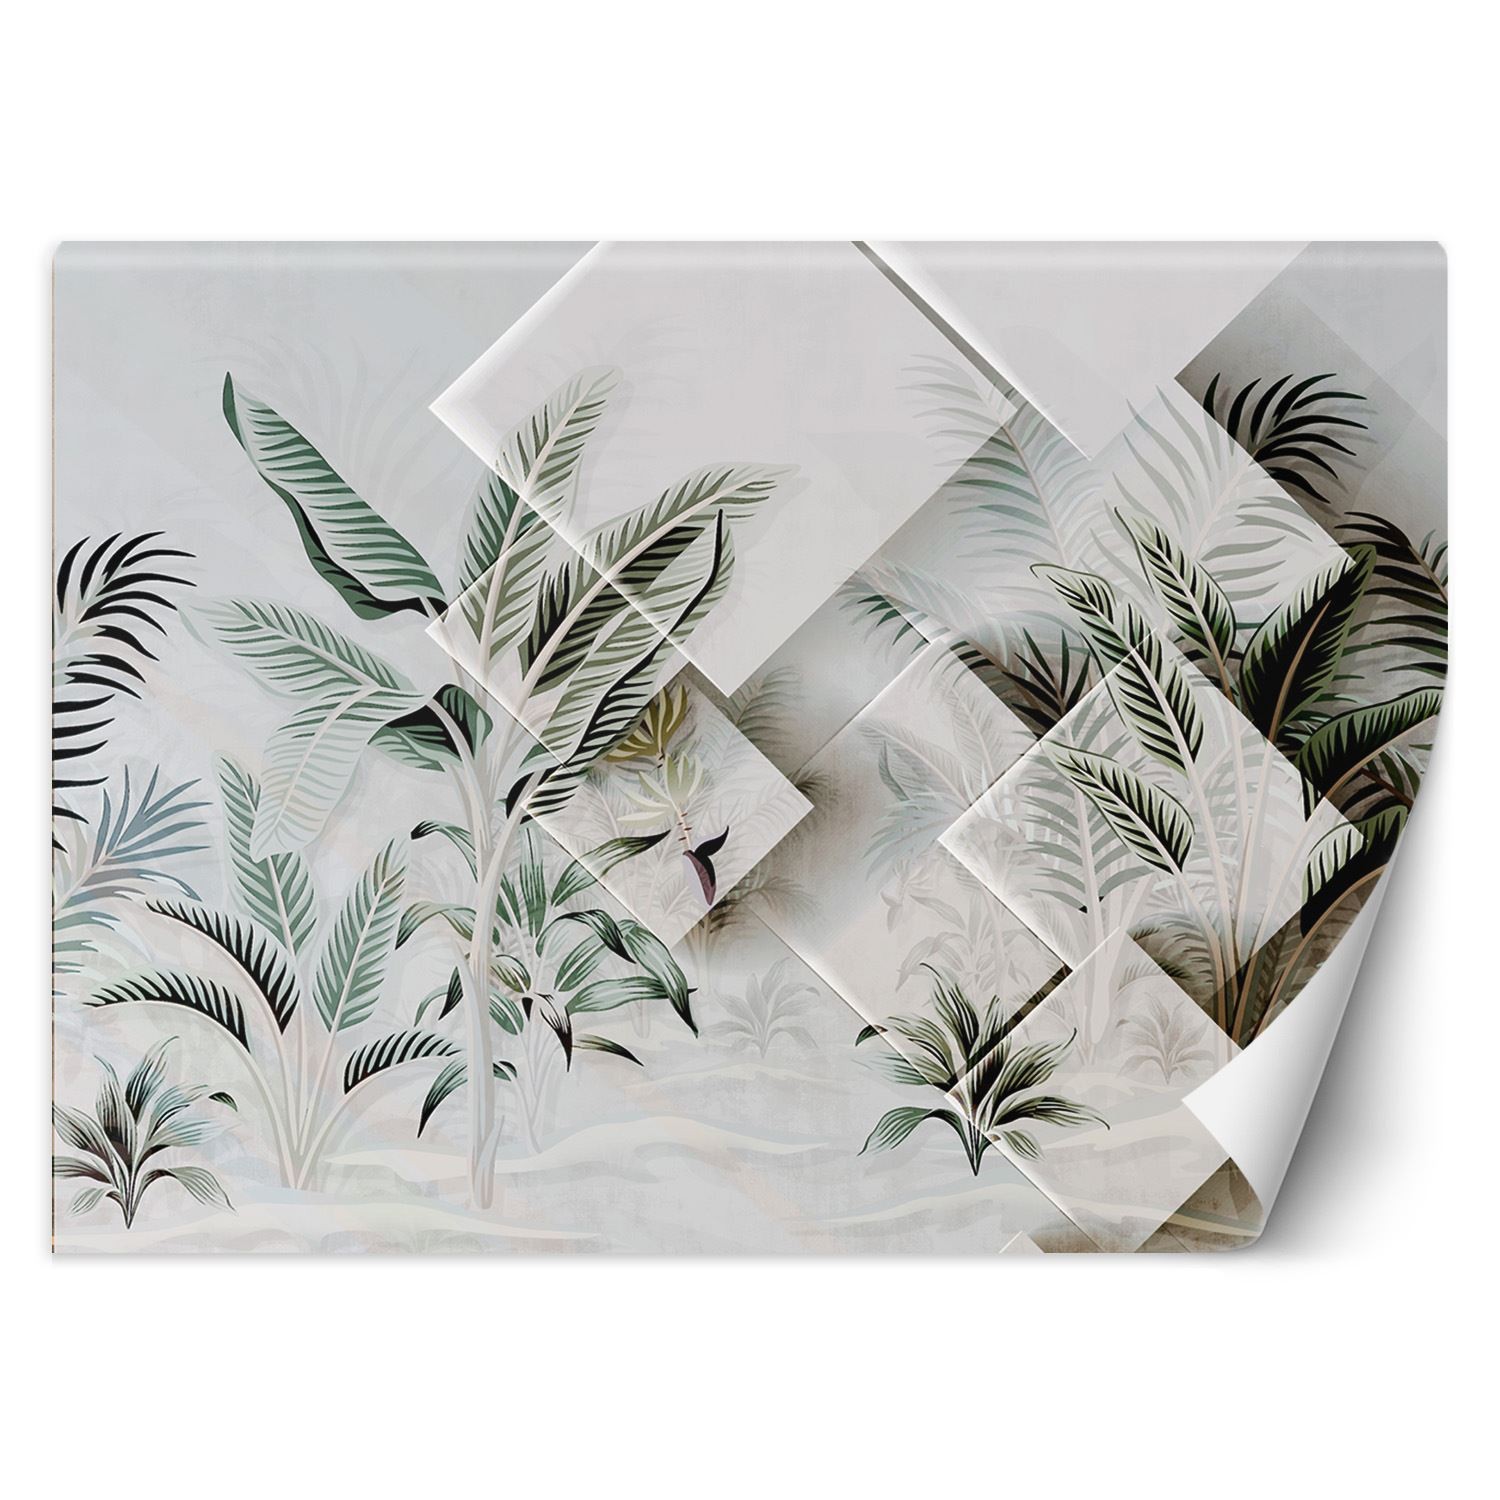 Trend24 – Behang – Groene Bladeren 3D – Behangpapier – Fotobehang Bloemen – Behang Woonkamer – 450x315x2 cm – Incl. behanglijm